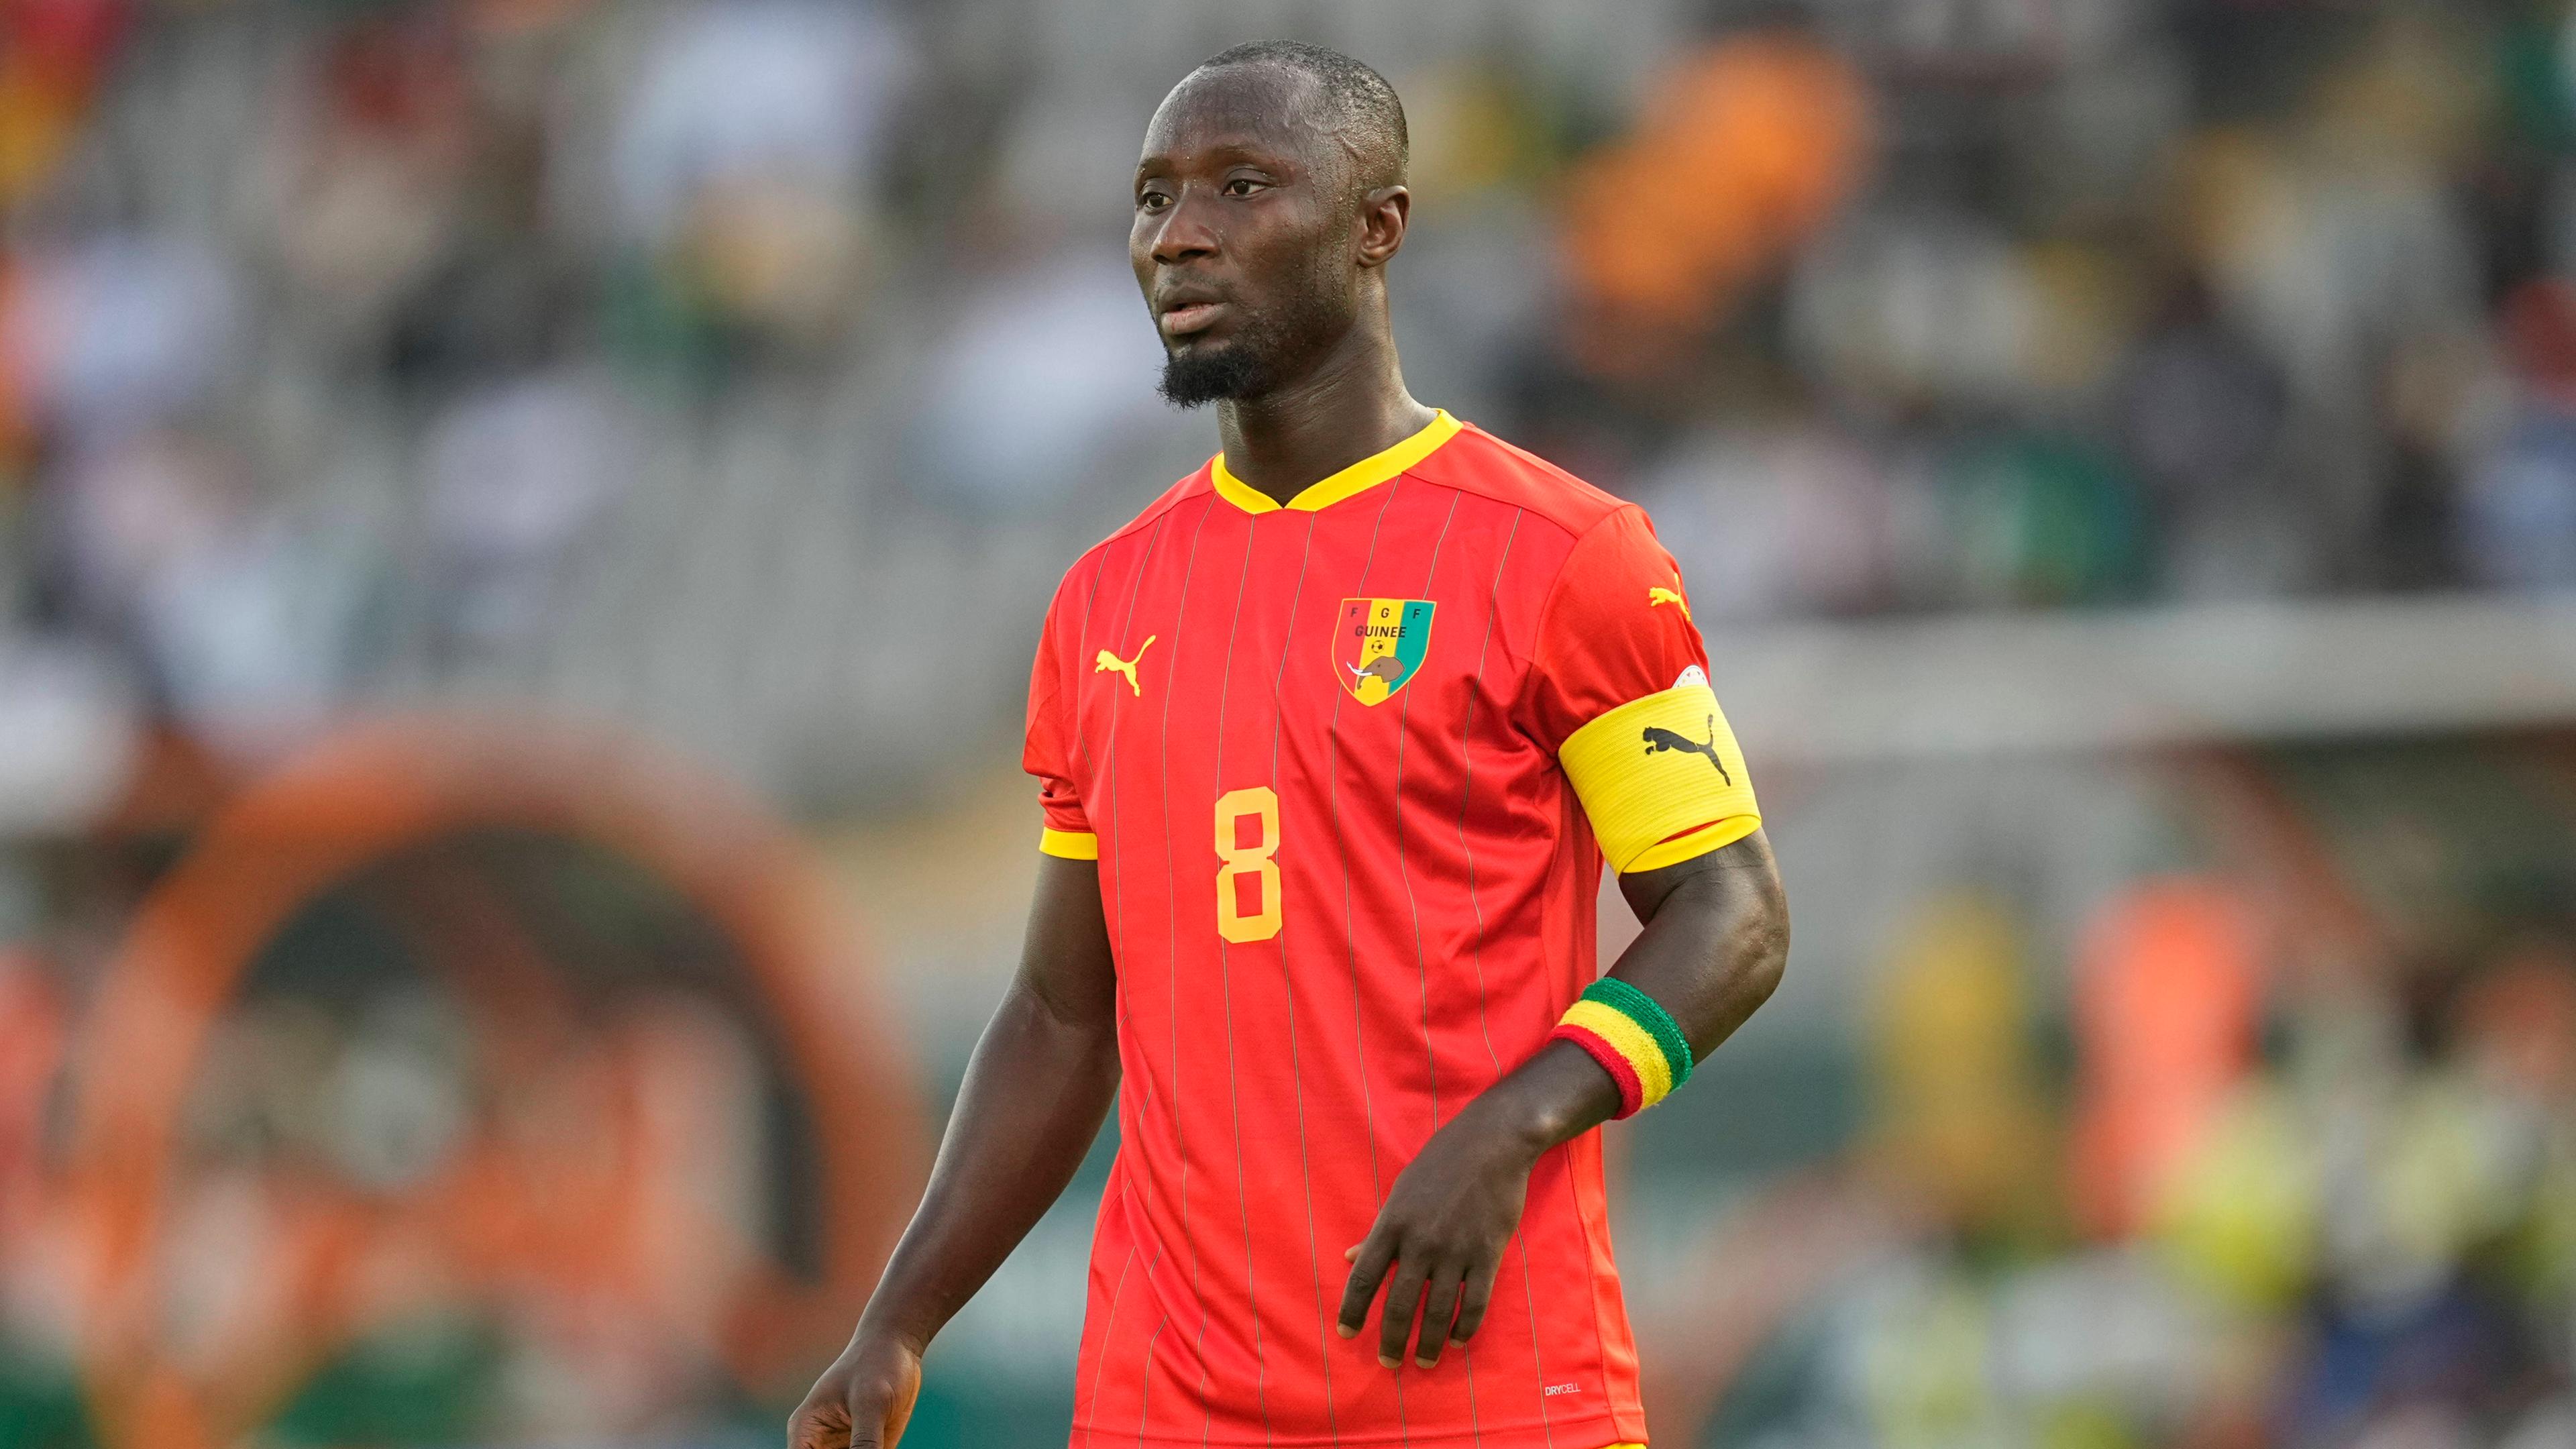 Der Fahnenträger für Guinea ist ein Bekannter aus der Fußball-Bundesliga: Werder Bremens Naby Keita. Bei Olympia führt er Guineas Nationalmannschaft als Kapitän an.